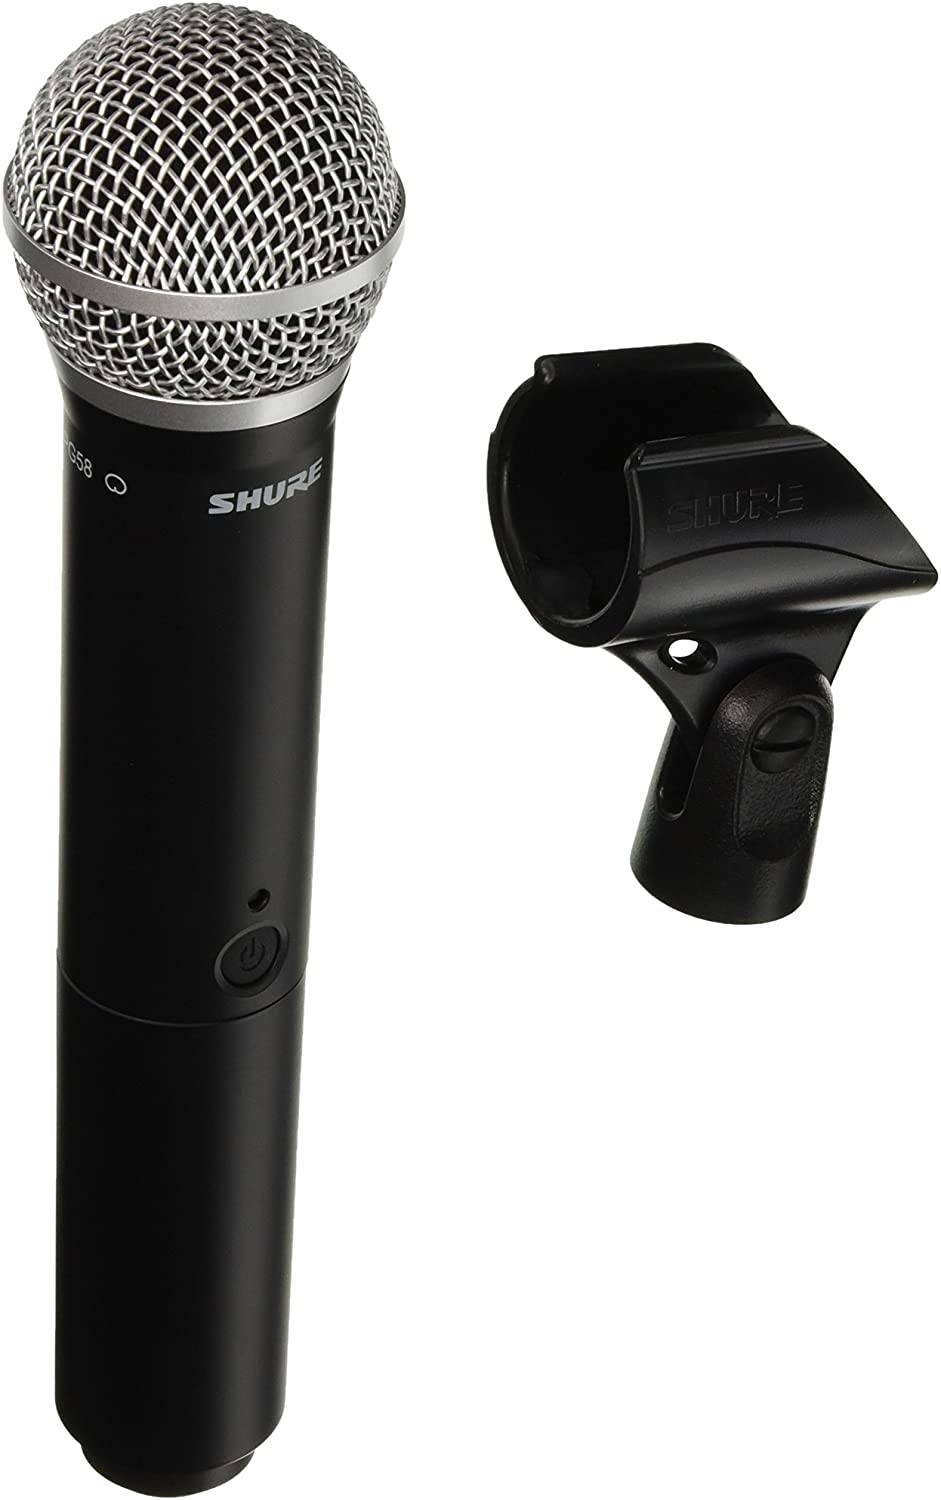 Wireless microphone - Die hochwertigsten Wireless microphone auf einen Blick